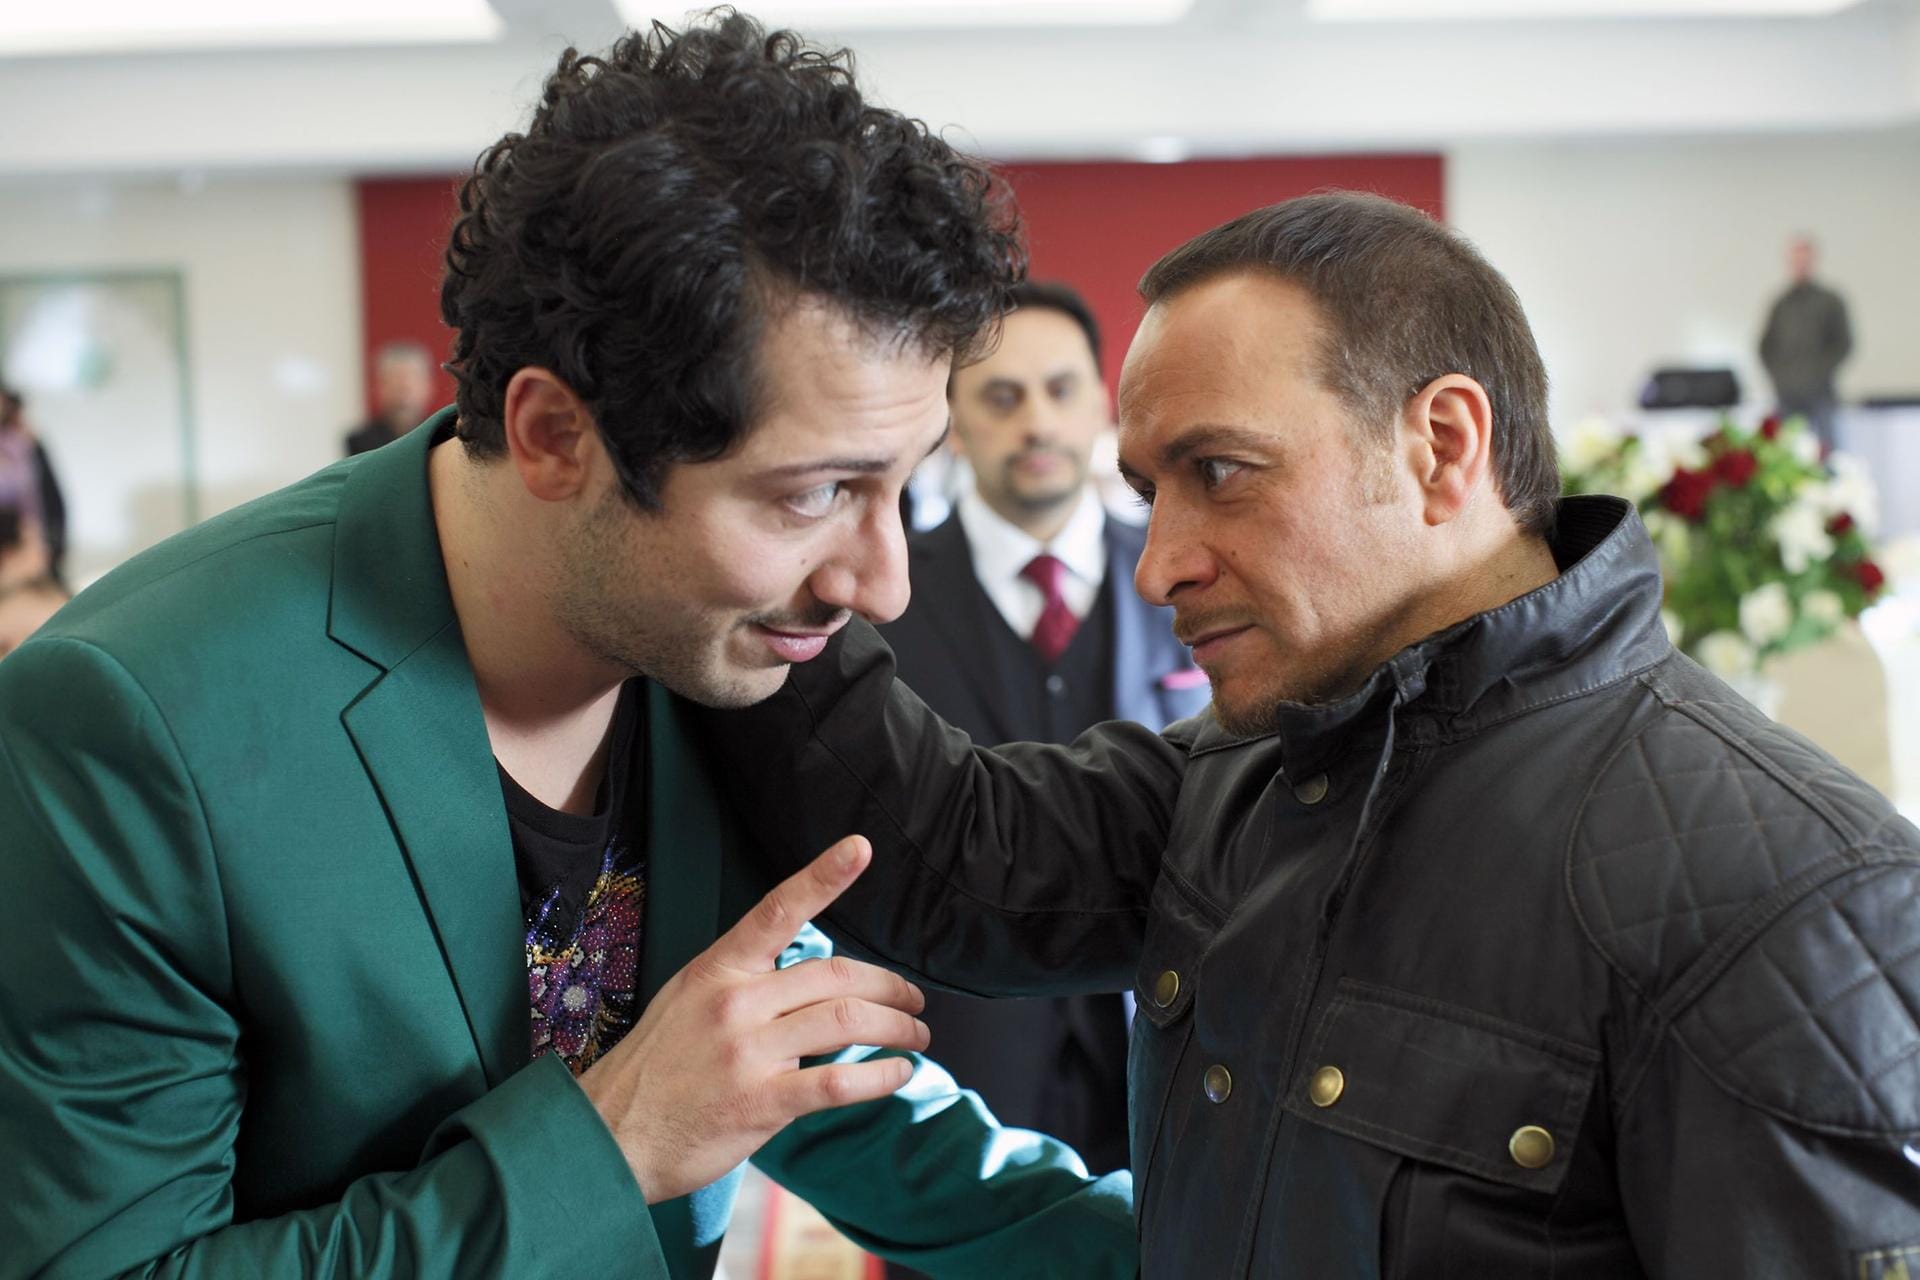 Fahri Yardim spielte 2010 in der Episode "Der letzte Tag" mit.